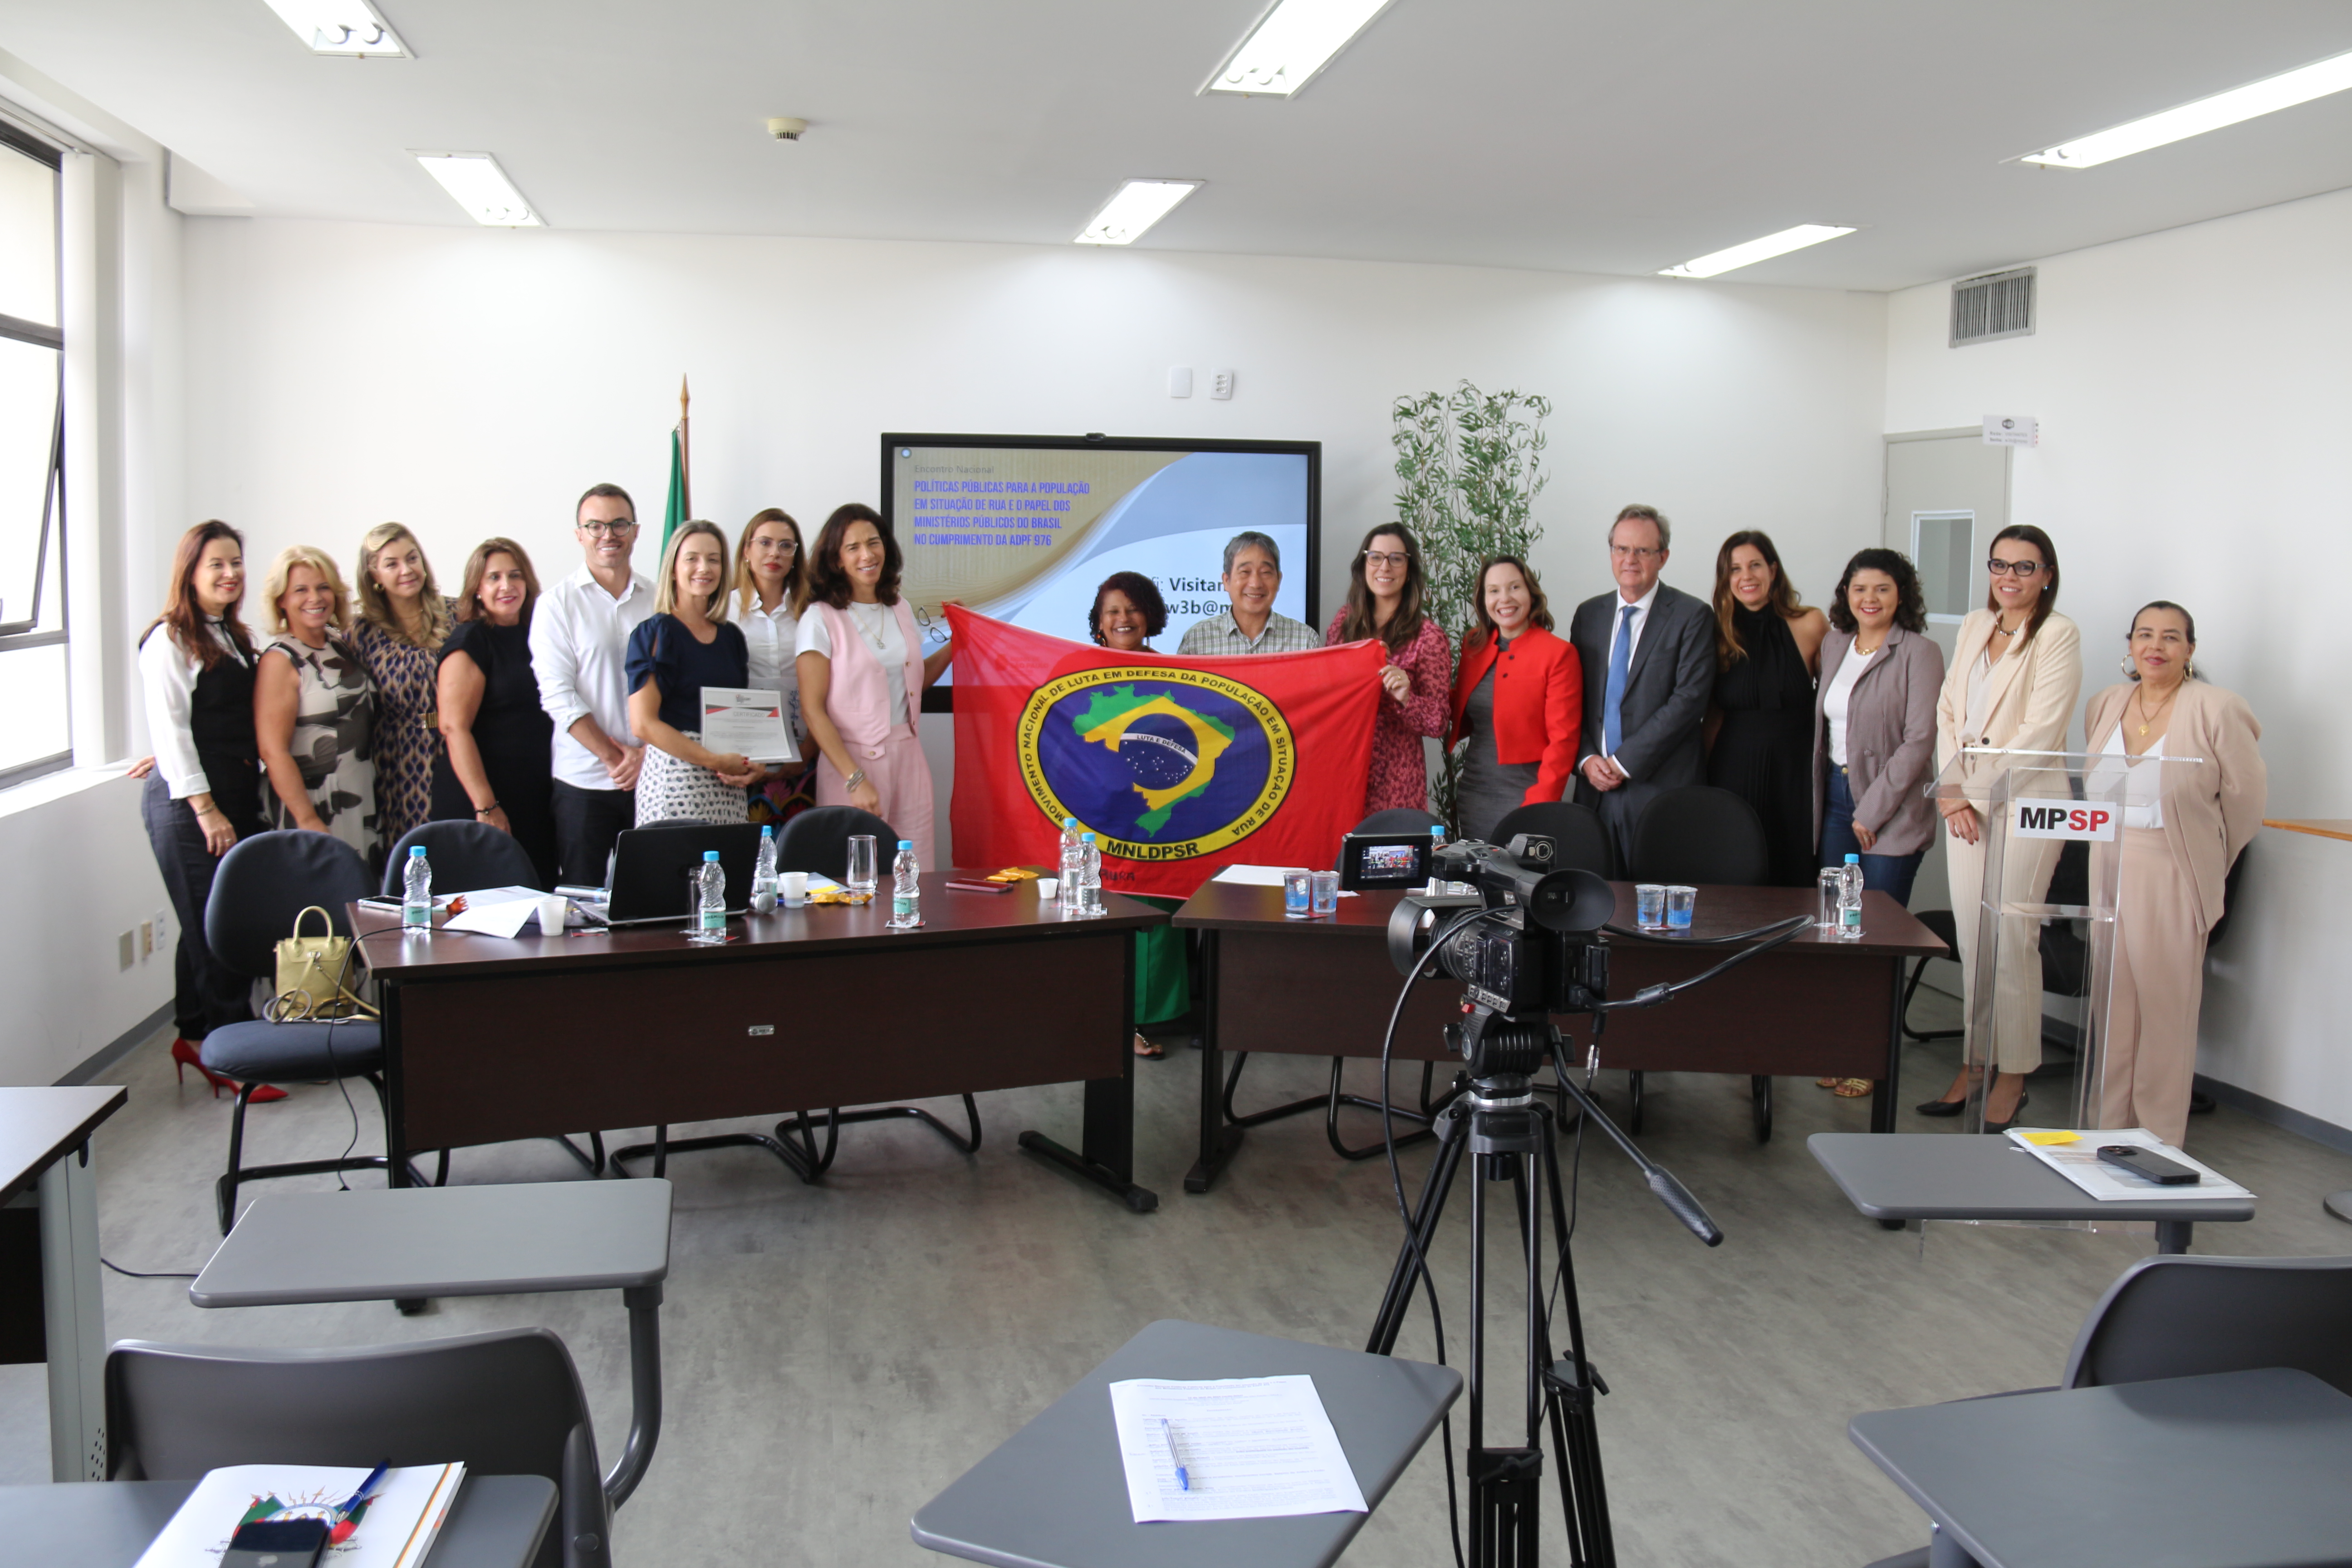 Foto com participantes do evento e, ao centro, a bandeira do Movimento Nacional de Luta em Defesa da População em Situação de Rua